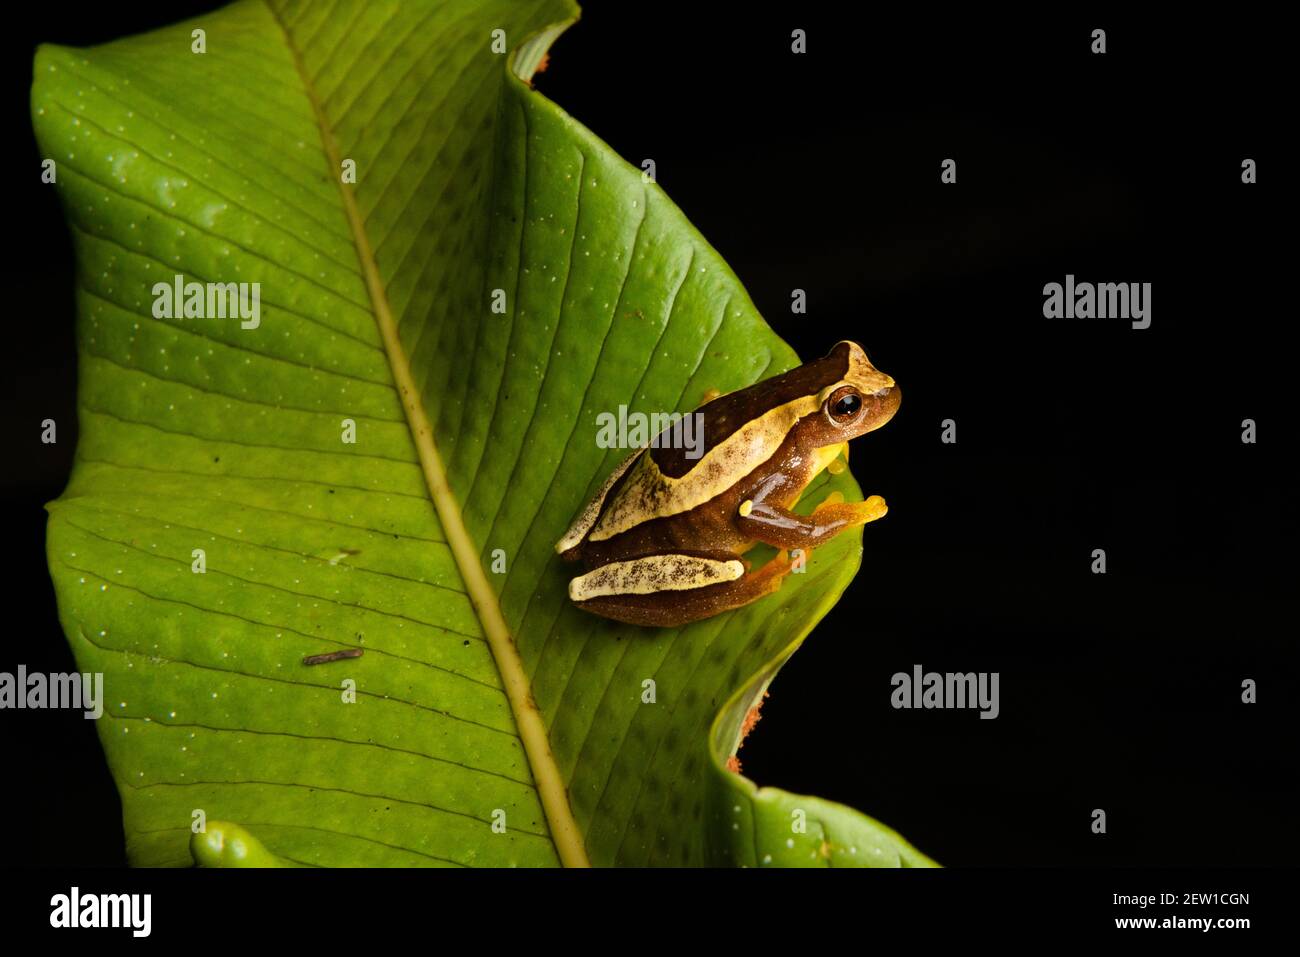 A Dendropsophus elegans frog, endemic to the Atlantic Rainforest of SE Brazil Stock Photo